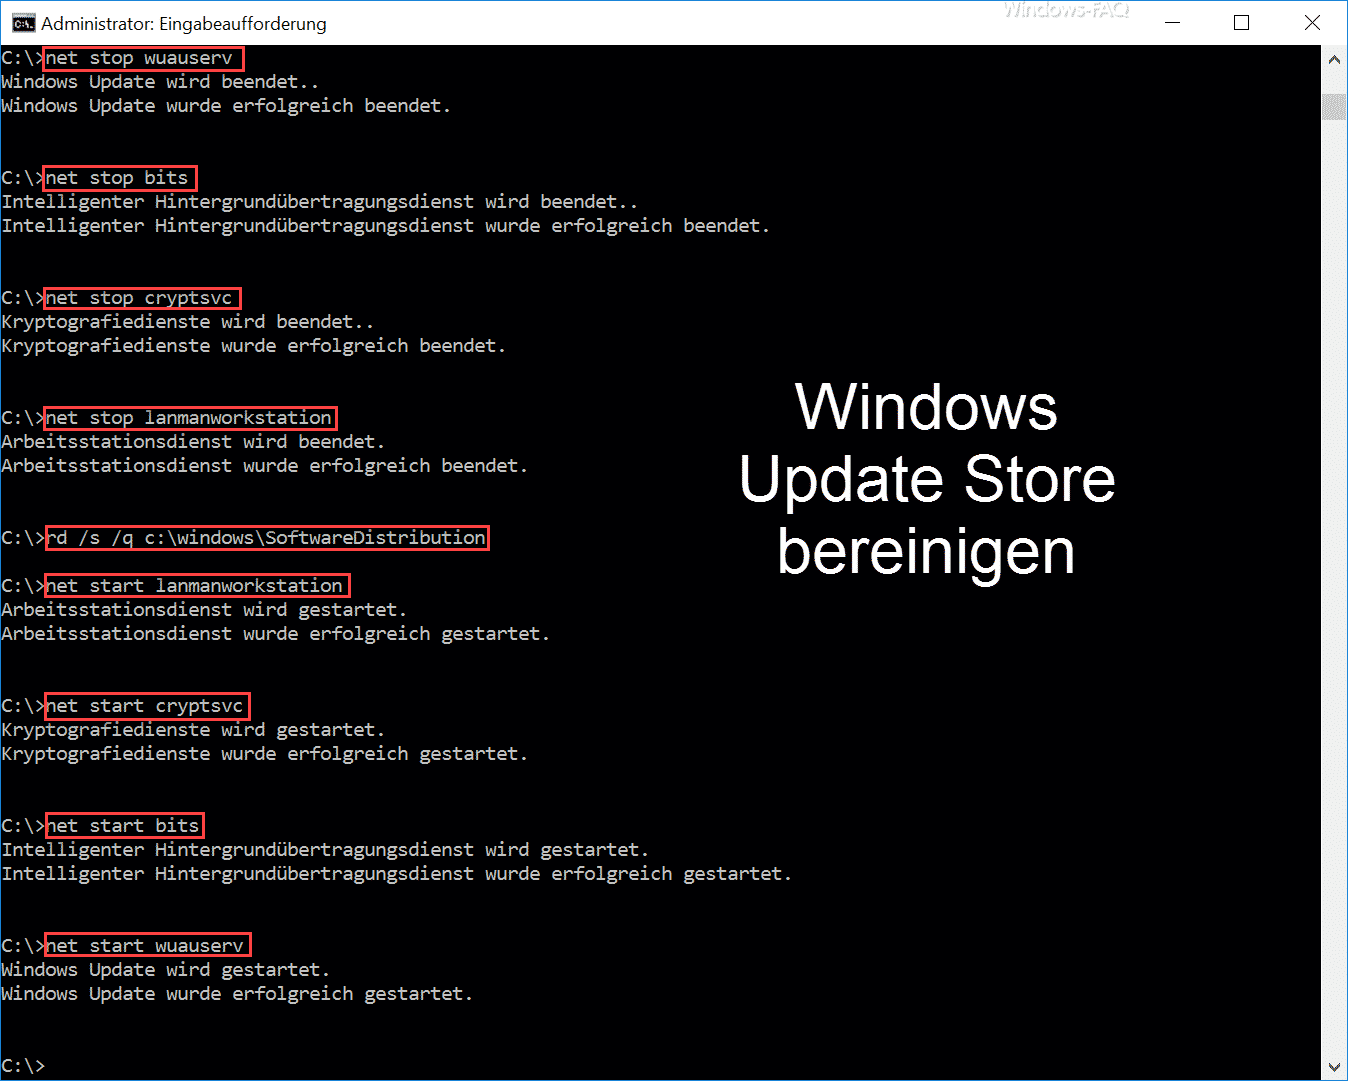 Windows Update Store bereinigen